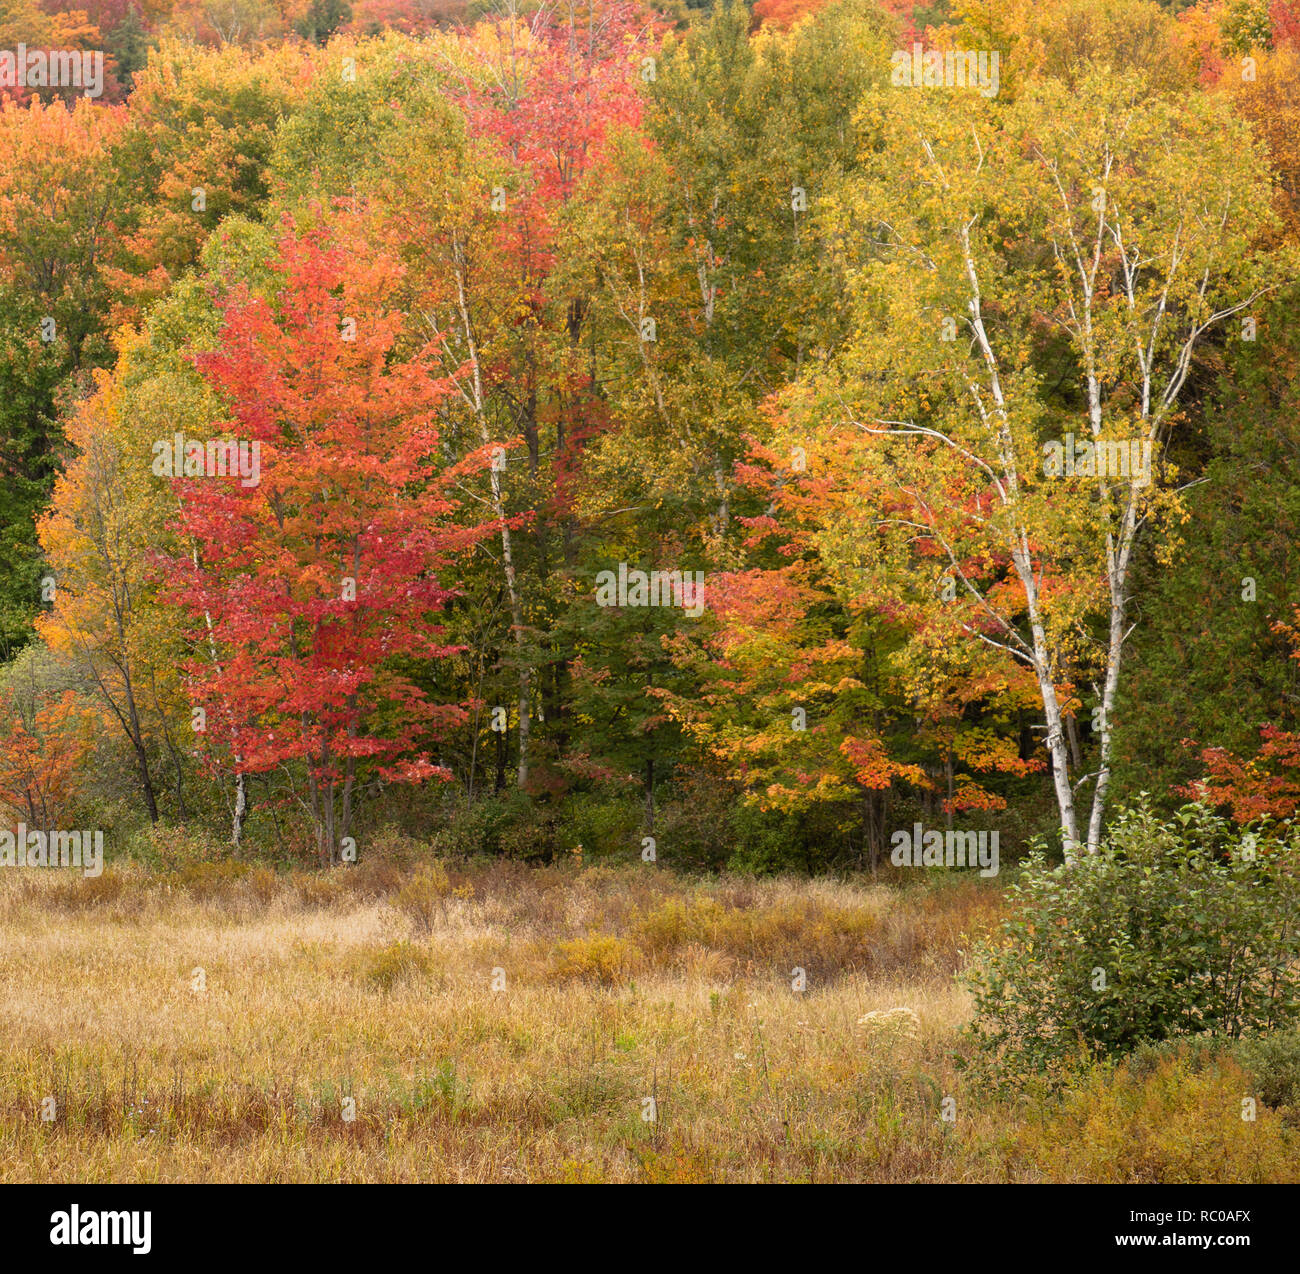 Forêt de Muskoka avec feuillage d'automne coloré Banque D'Images